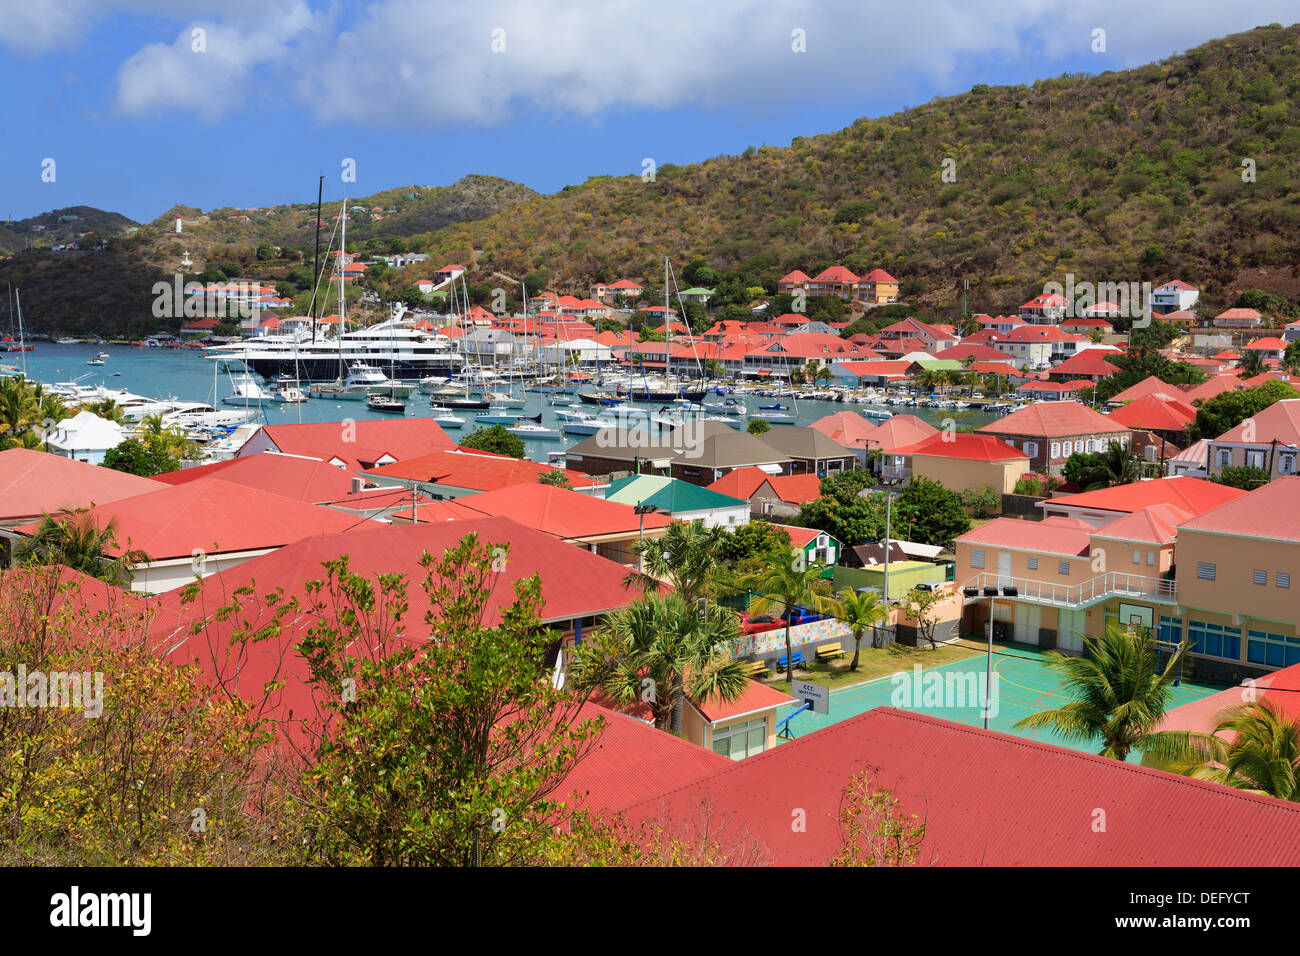 Gustavia, Saint Barthélemy (St. Barth), les îles sous le vent, Antilles, Caraïbes, Amérique Centrale Banque D'Images